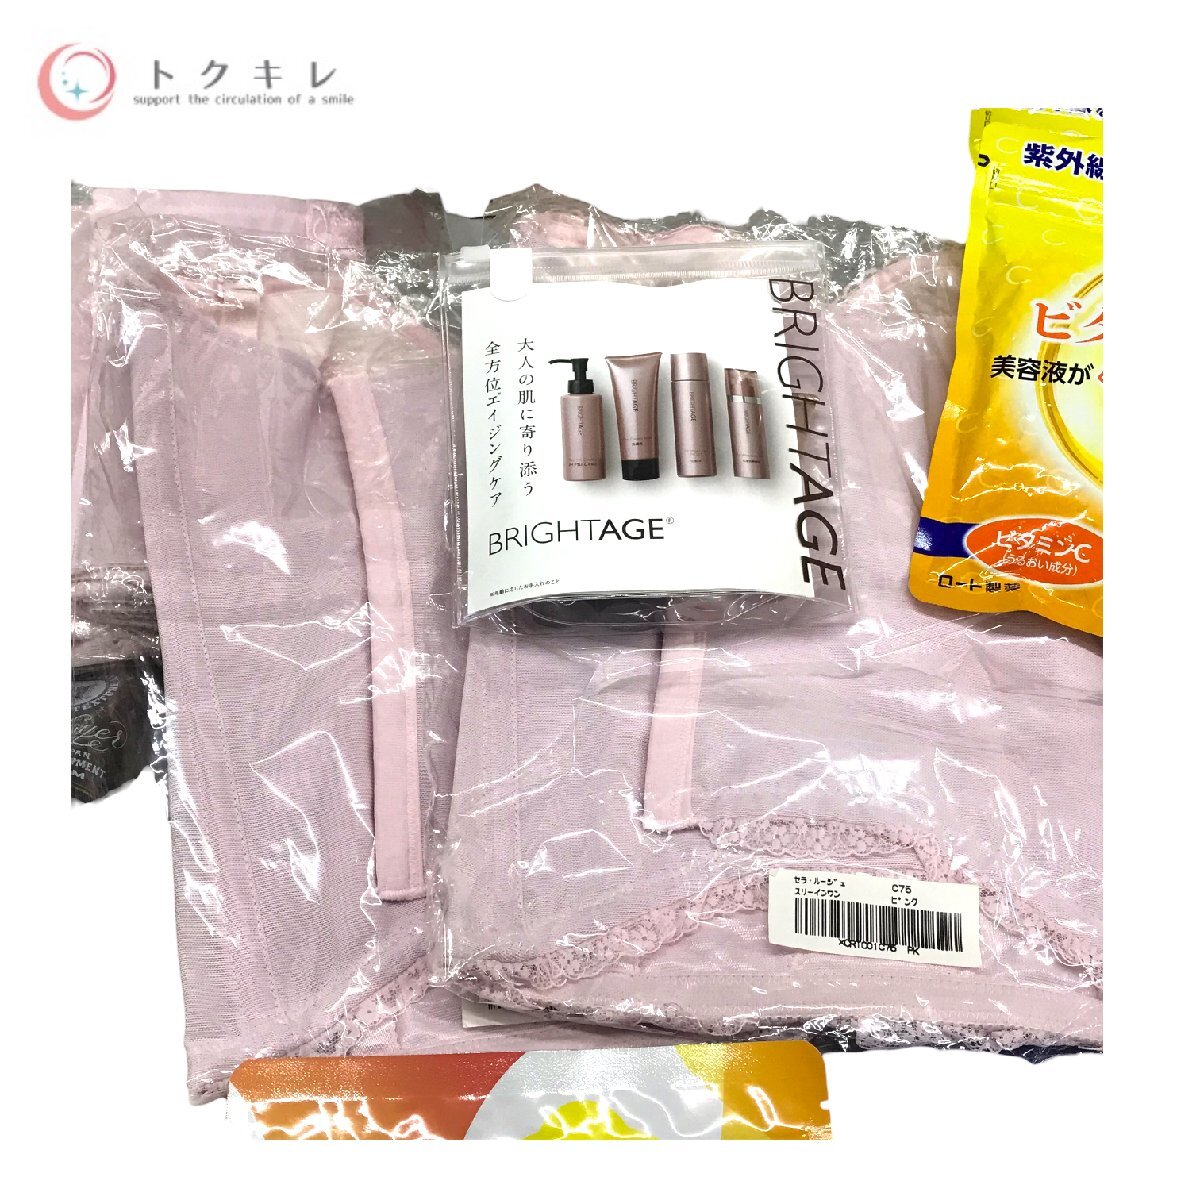 !1 иен старт бесплатная доставка cosme supplement .. много 48 позиций комплект яркий eijiti- плеер аспидистра rose o- geo low tomelanoCC CASIO